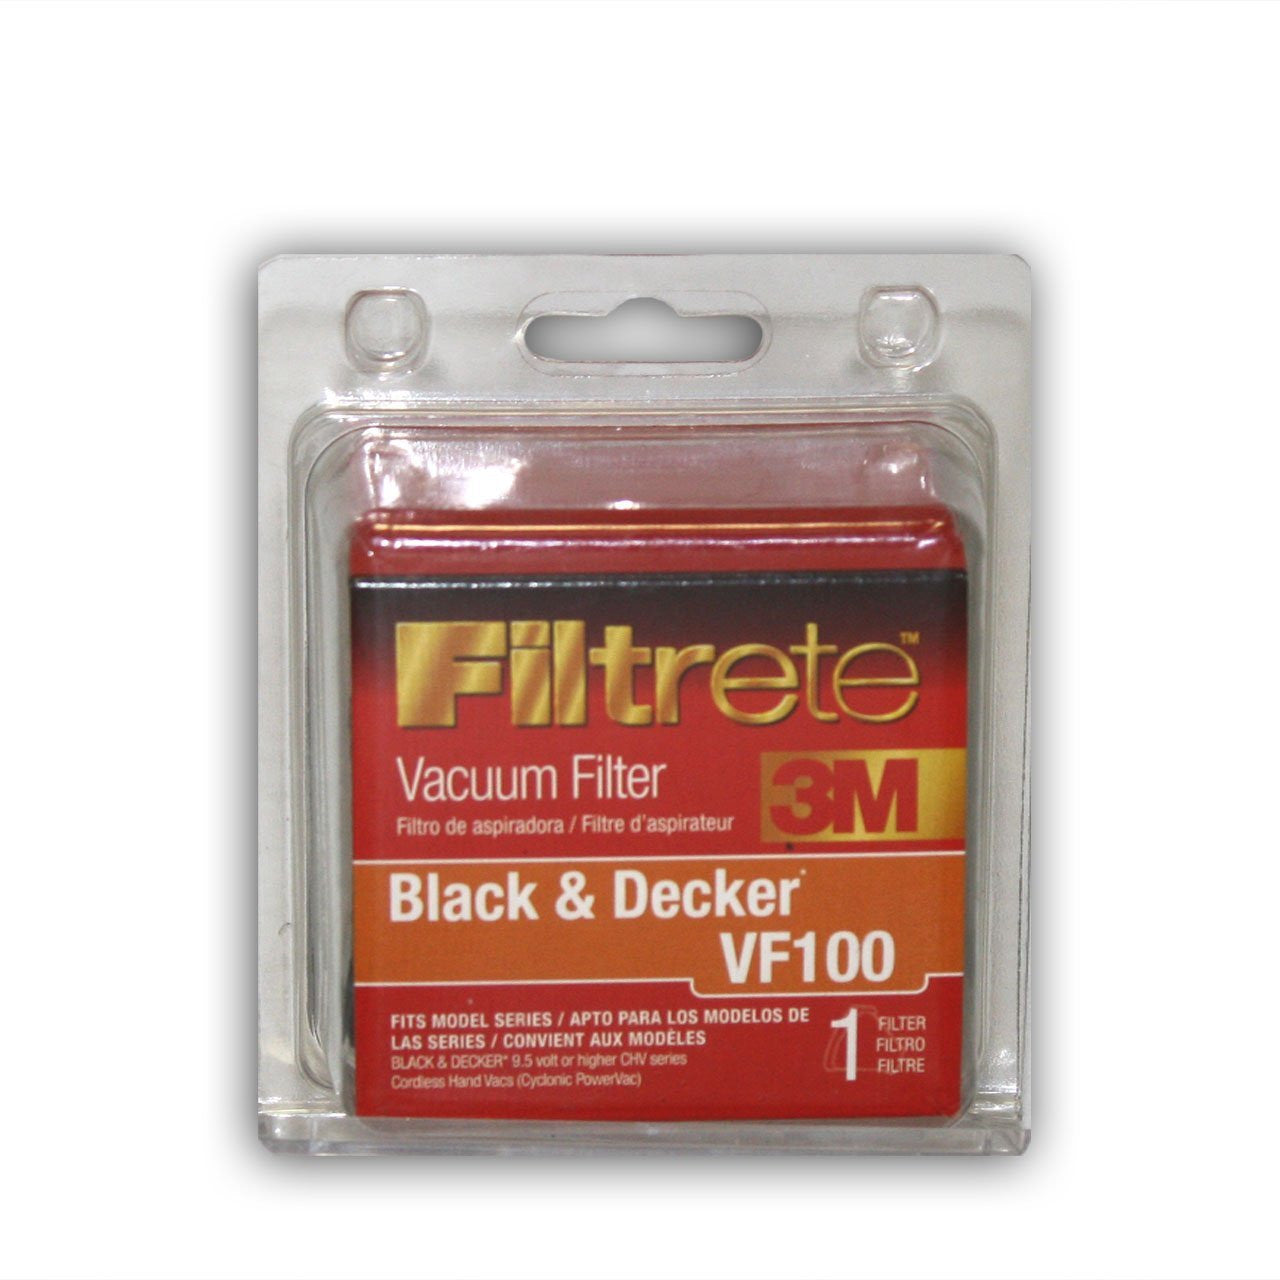 3M Filtrete Black & Decker VF100 Allergen Vacuum Filter, 1 Pack